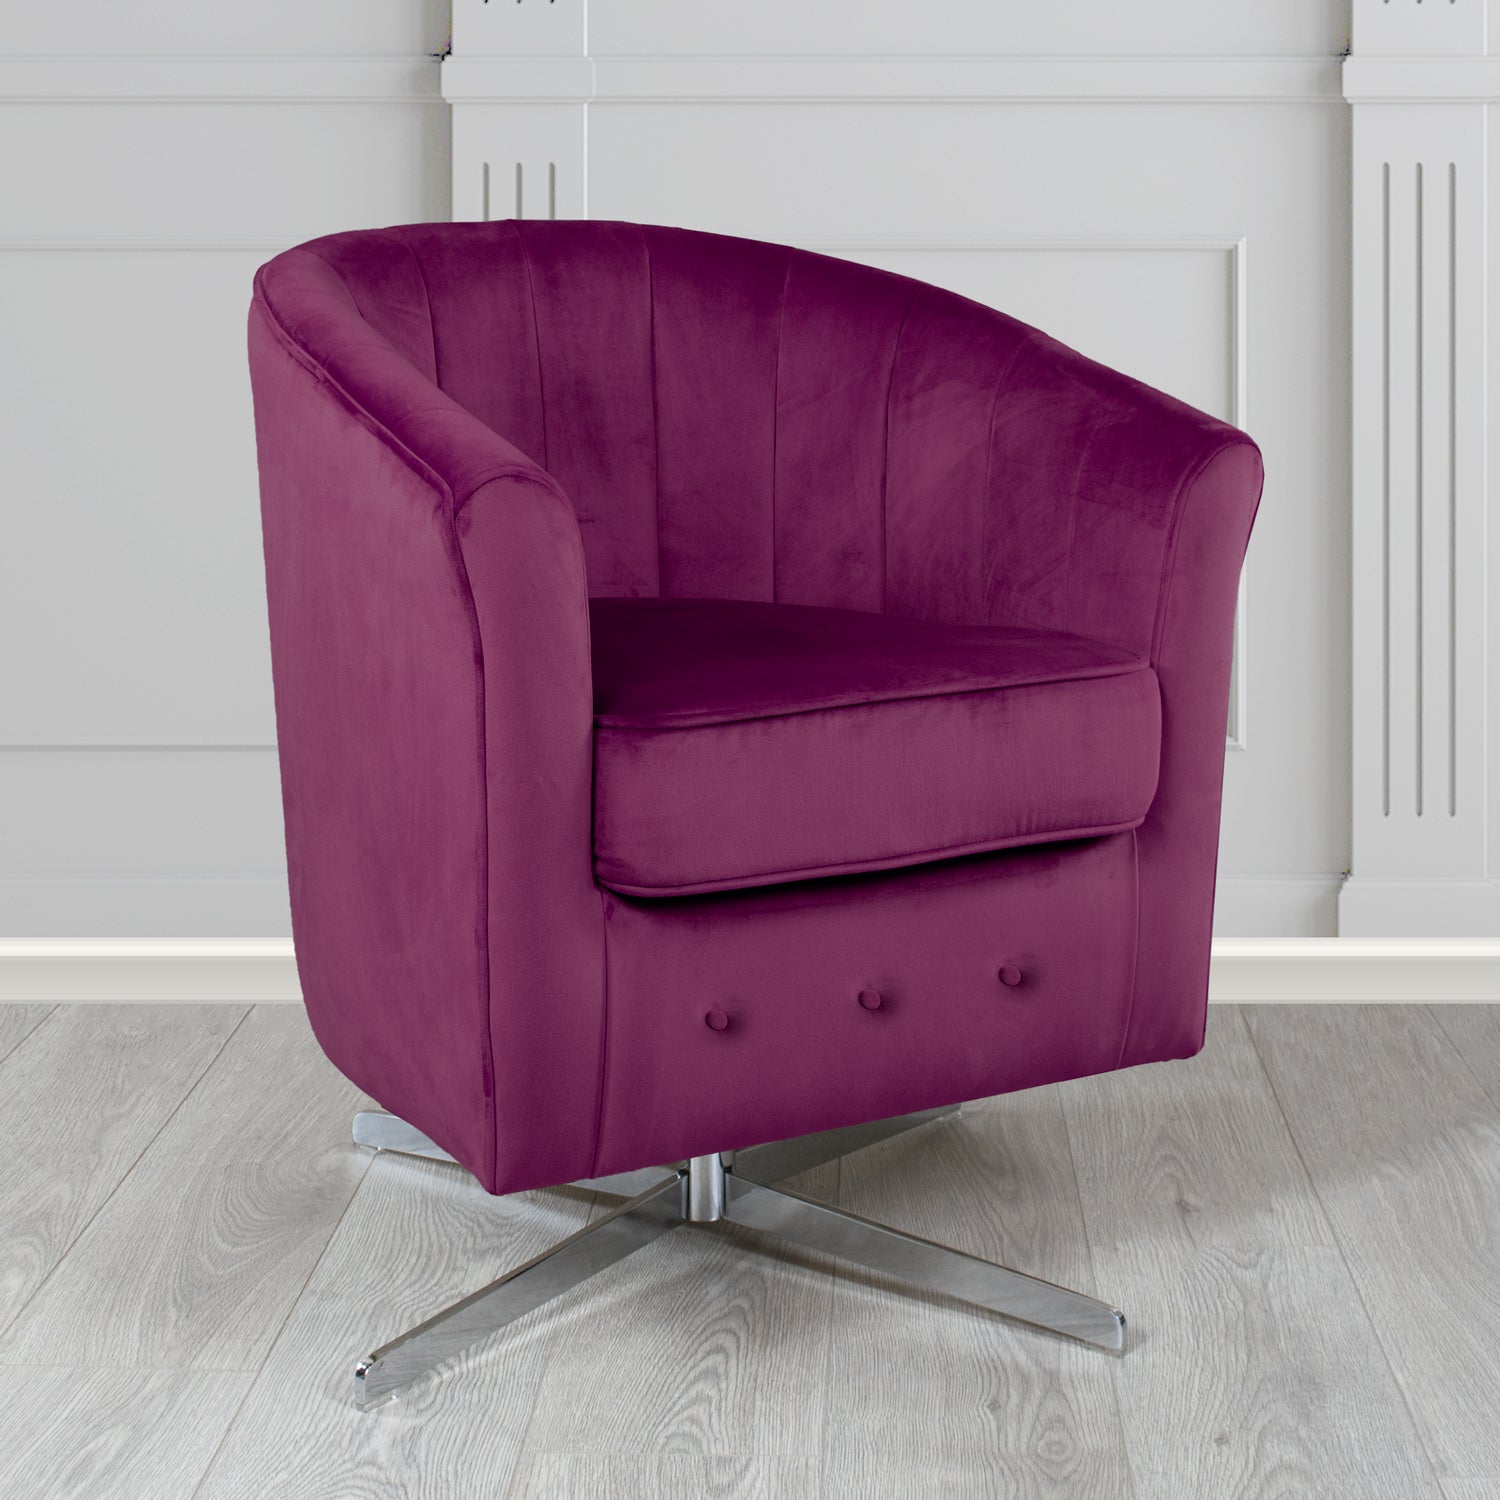 Doha Monaco Amethyst Plain Velvet Fabric Swivel Tub Chair - The Tub Chair Shop